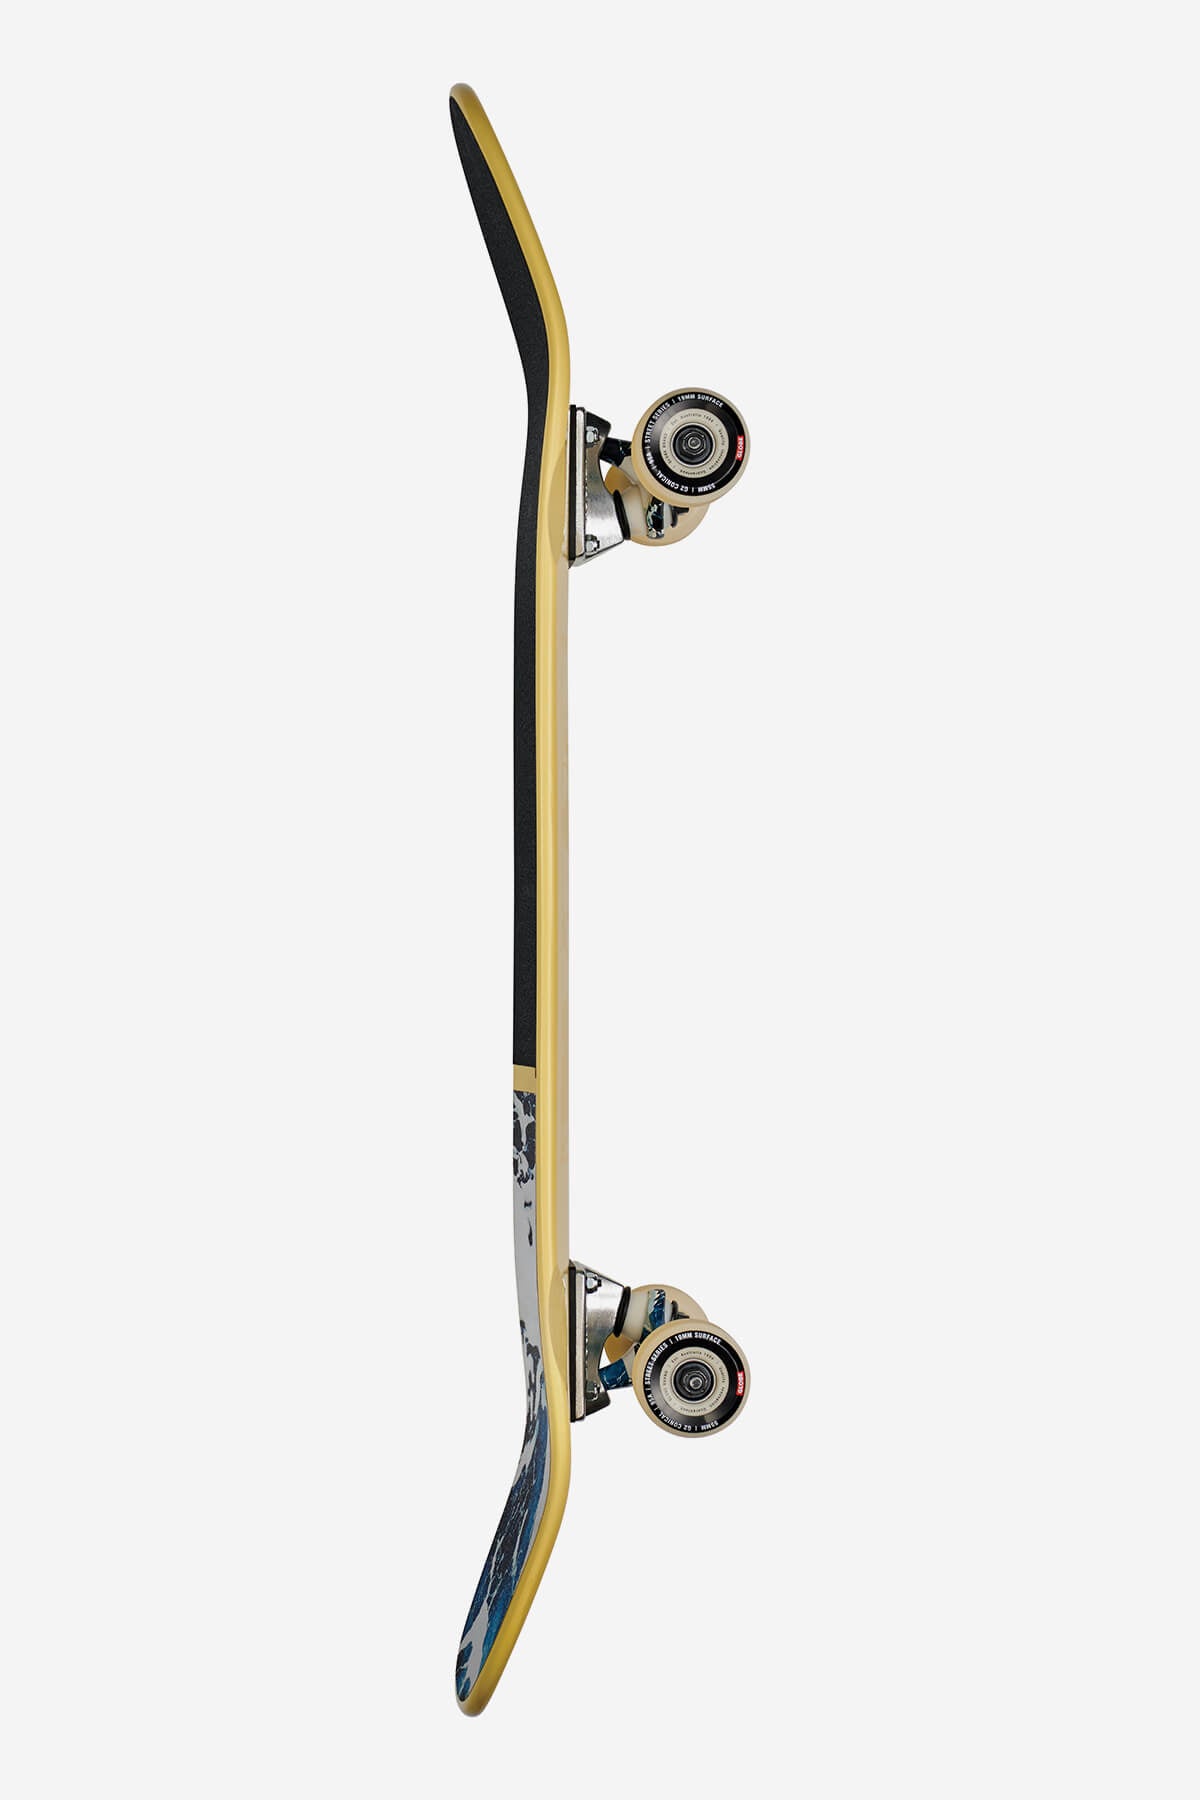 Globe - Shooter - Yellow/Comehell - 8.625" Komplett Skateboard